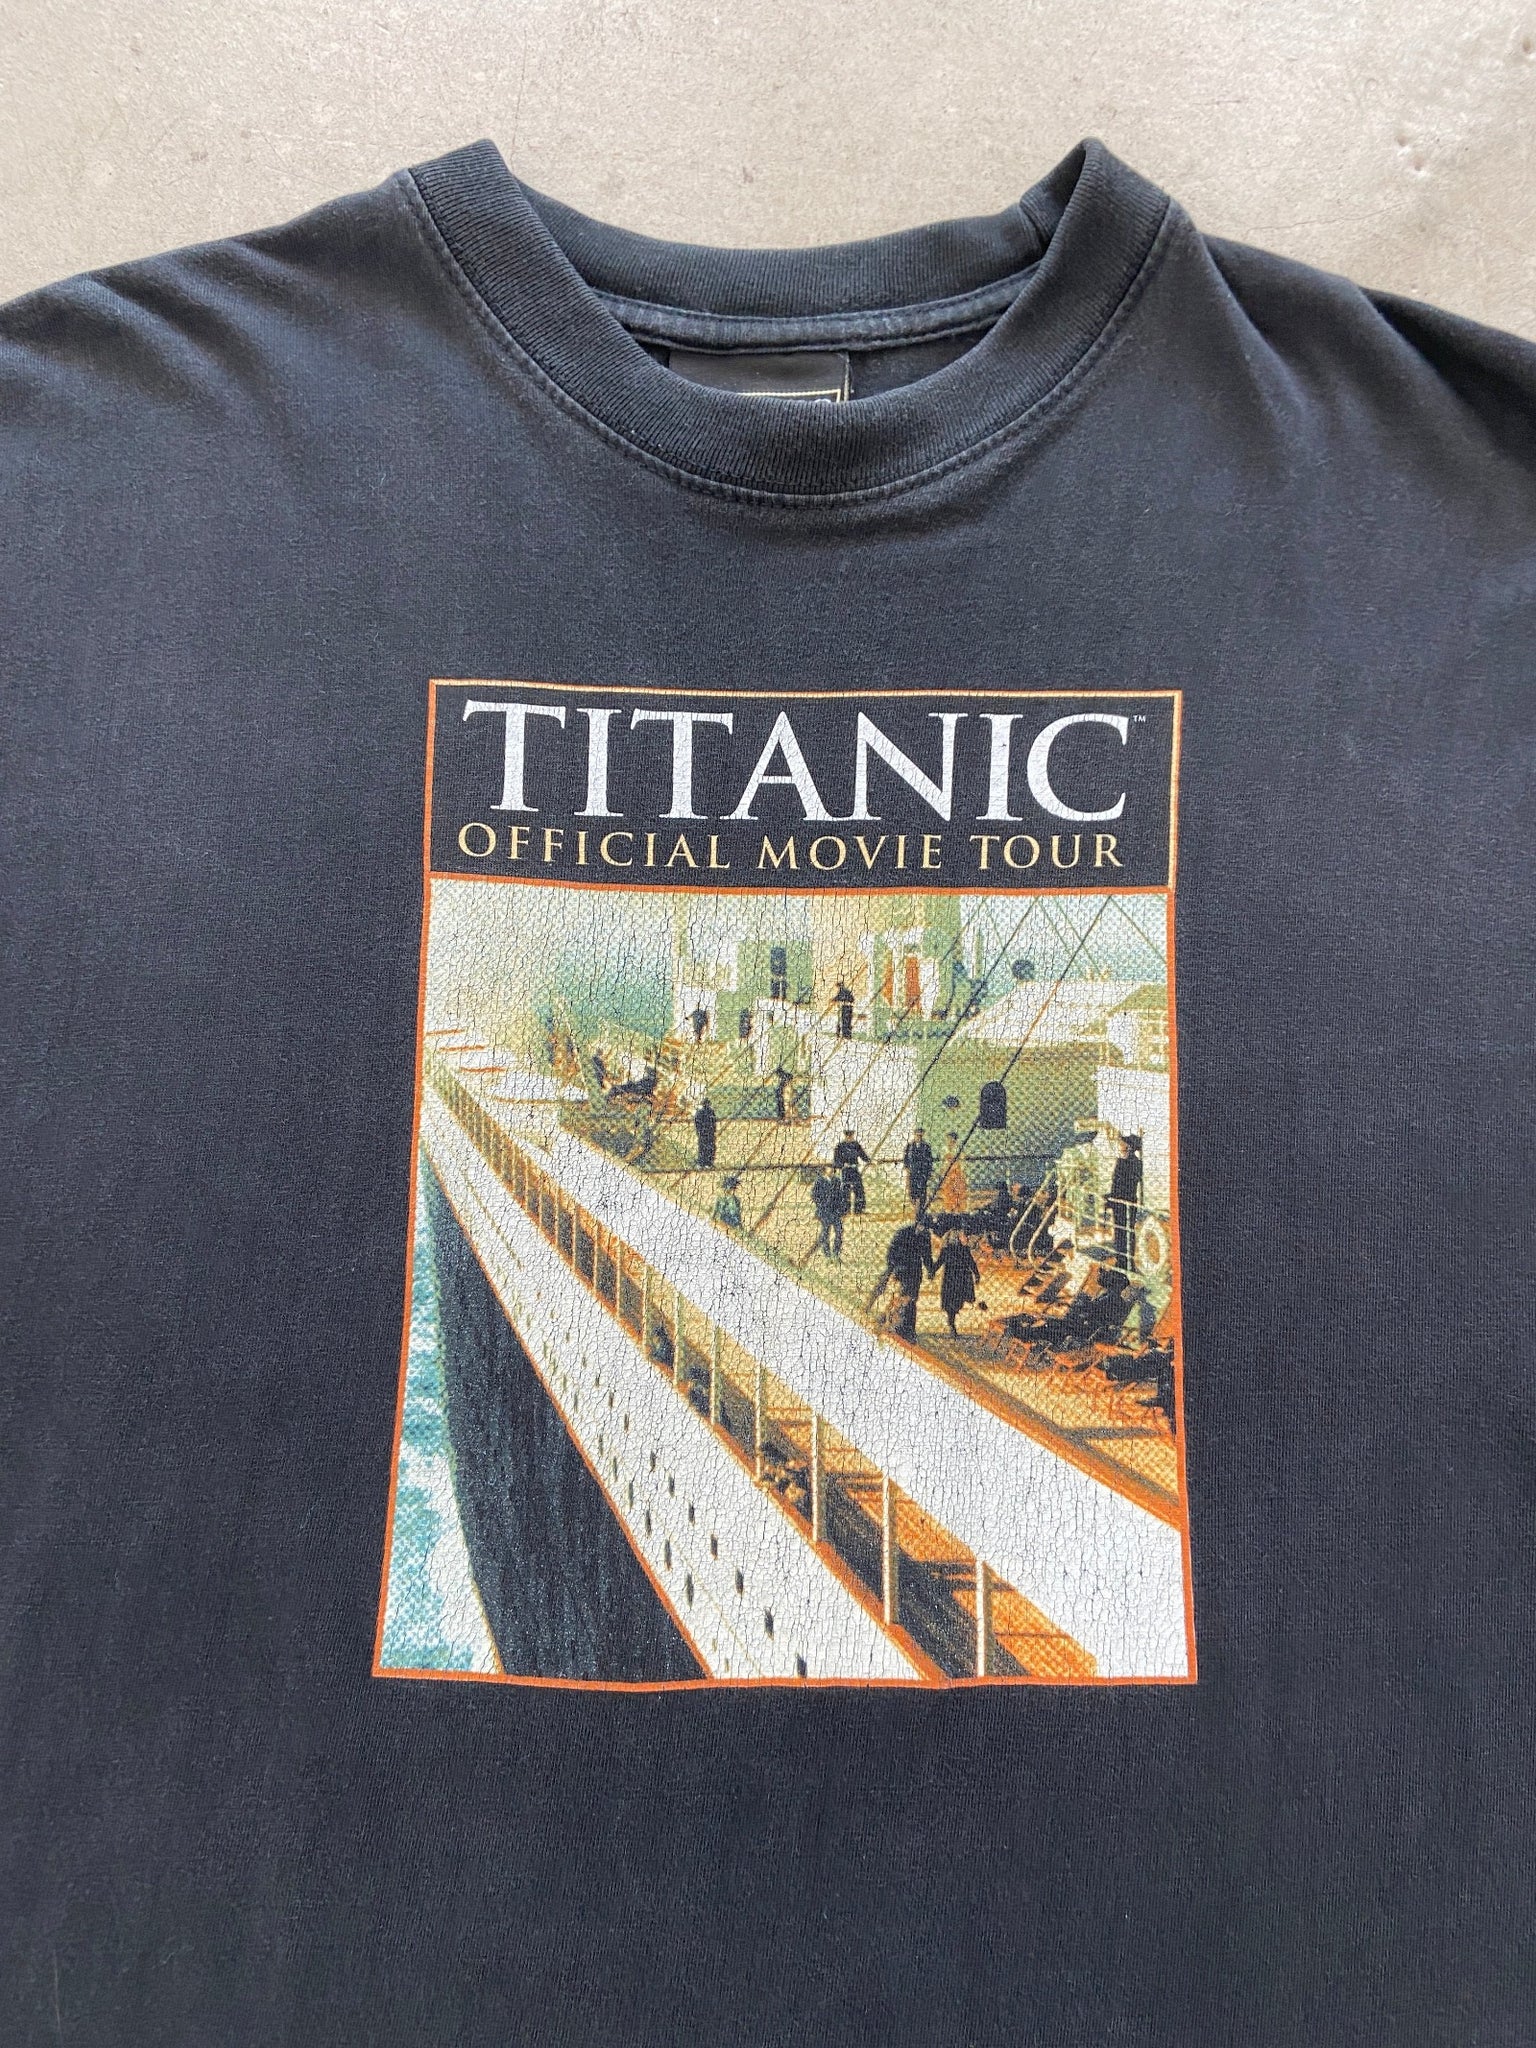 1998 Titanic Offical Movie Tour T-Shirt - L